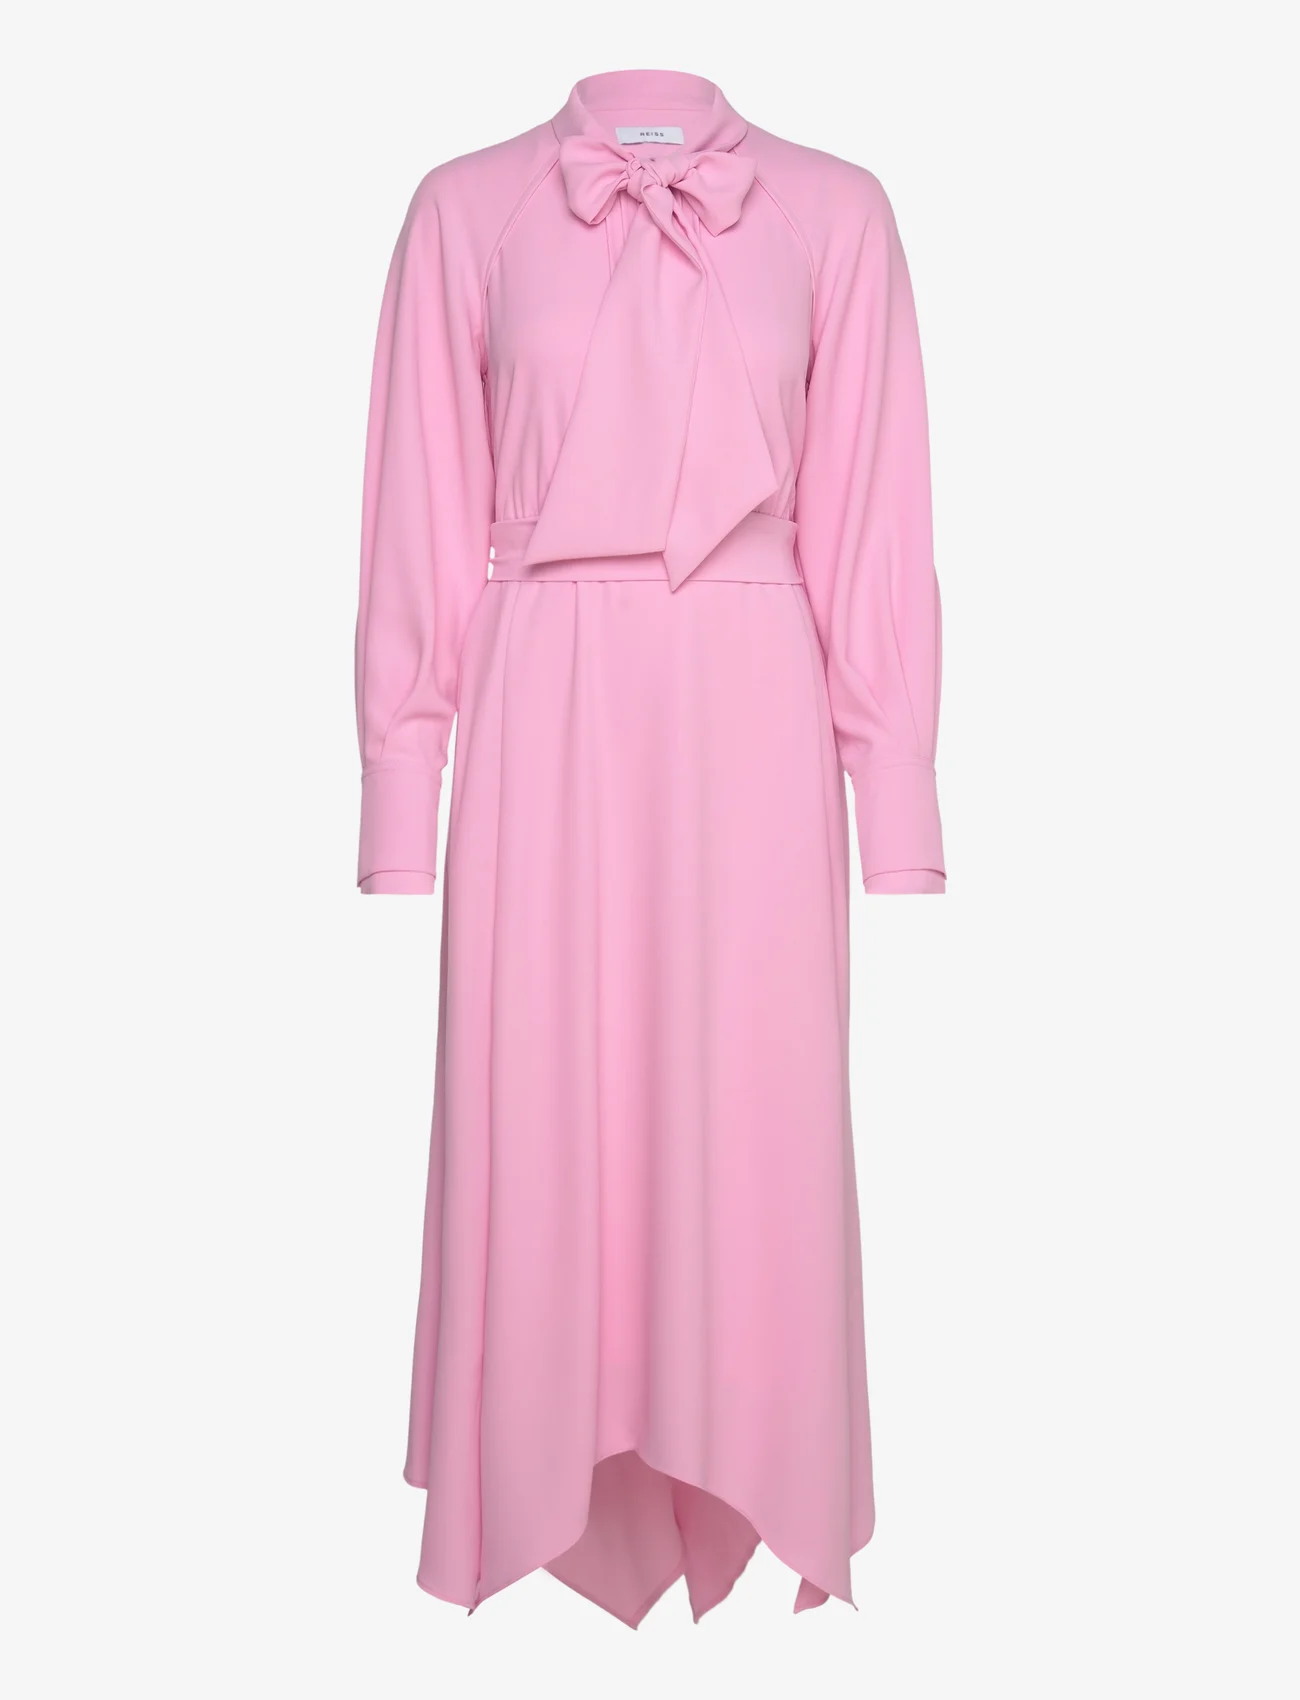 Reiss - ERICA - sukienki koszulowe - pink - 0